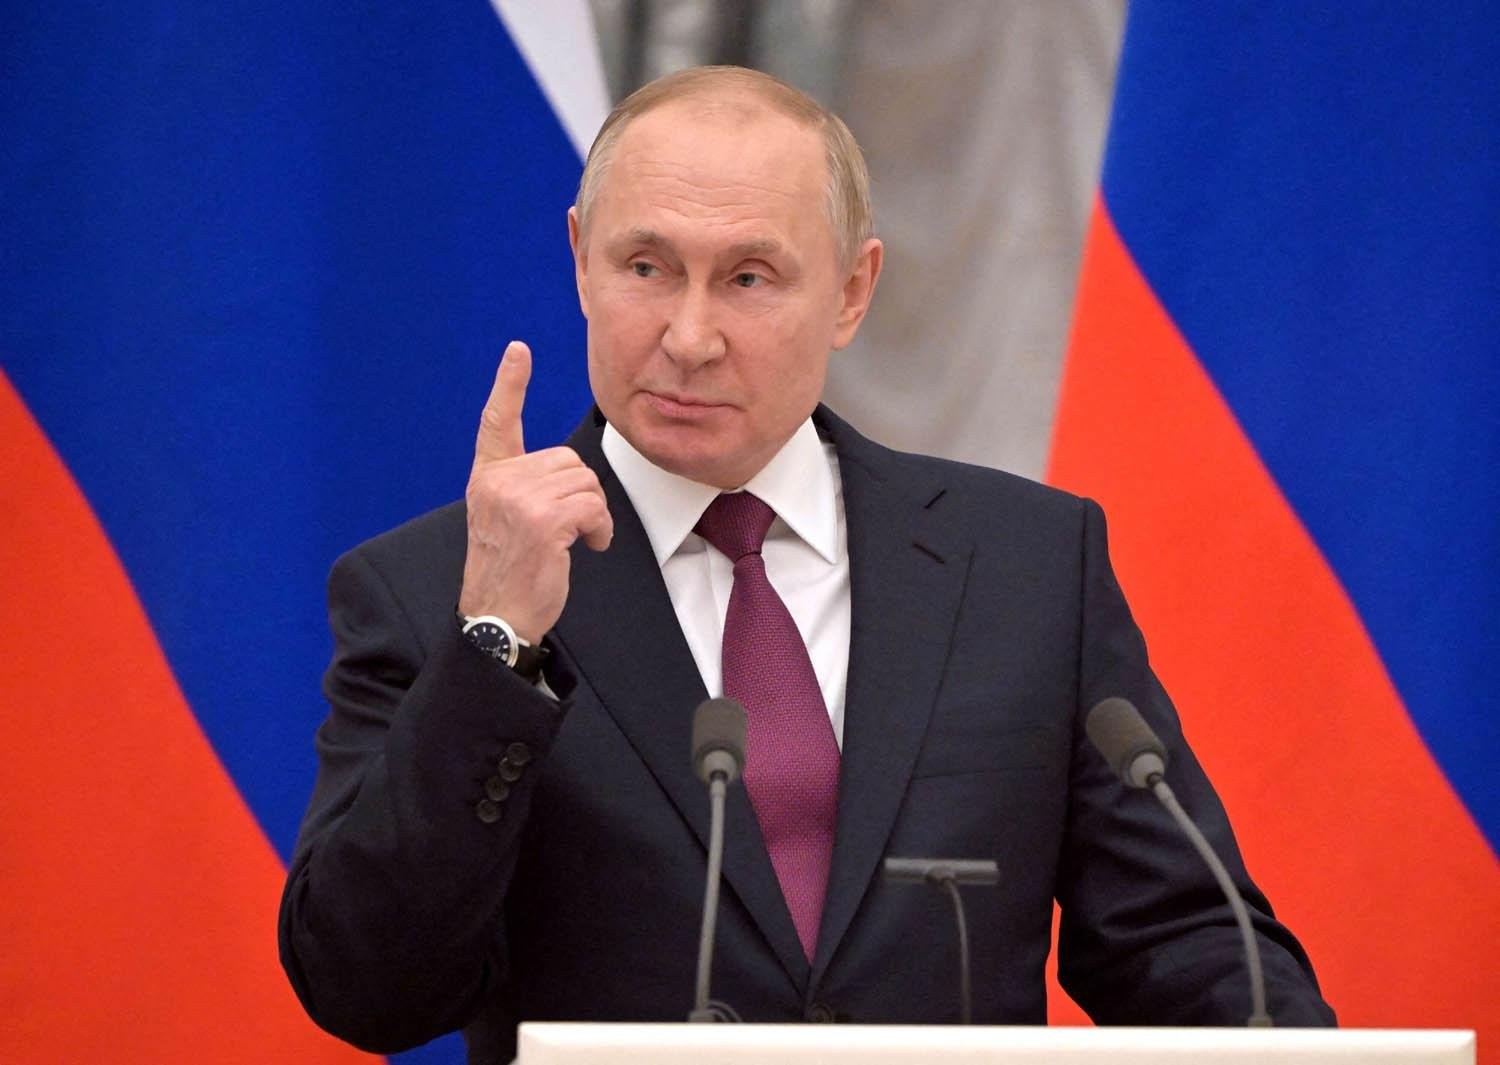 مهددًا باستخدام الأسلحة النووية.. بوتين: "يمكننا تدمير وسط كييف"